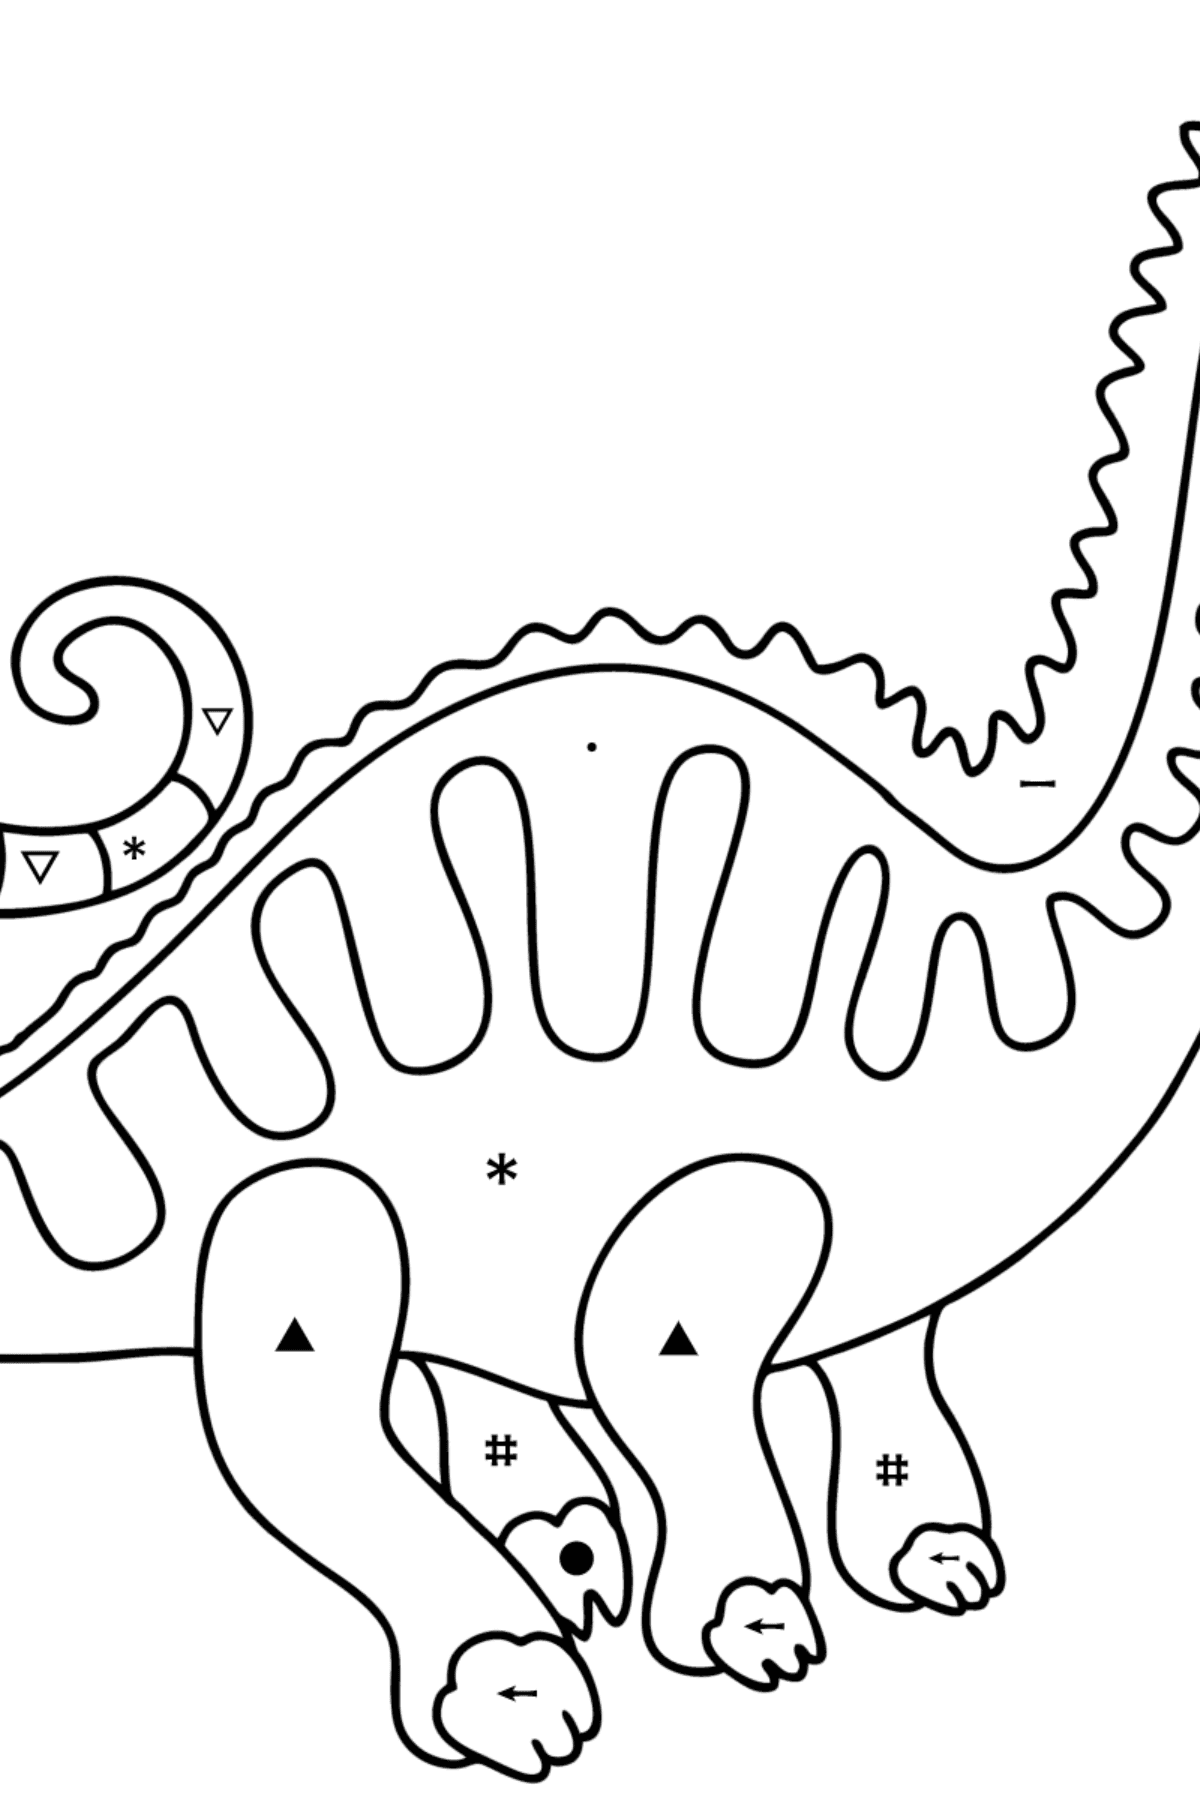 Dibujo de Apatosaurio para colorear - Colorear por Símbolos para Niños